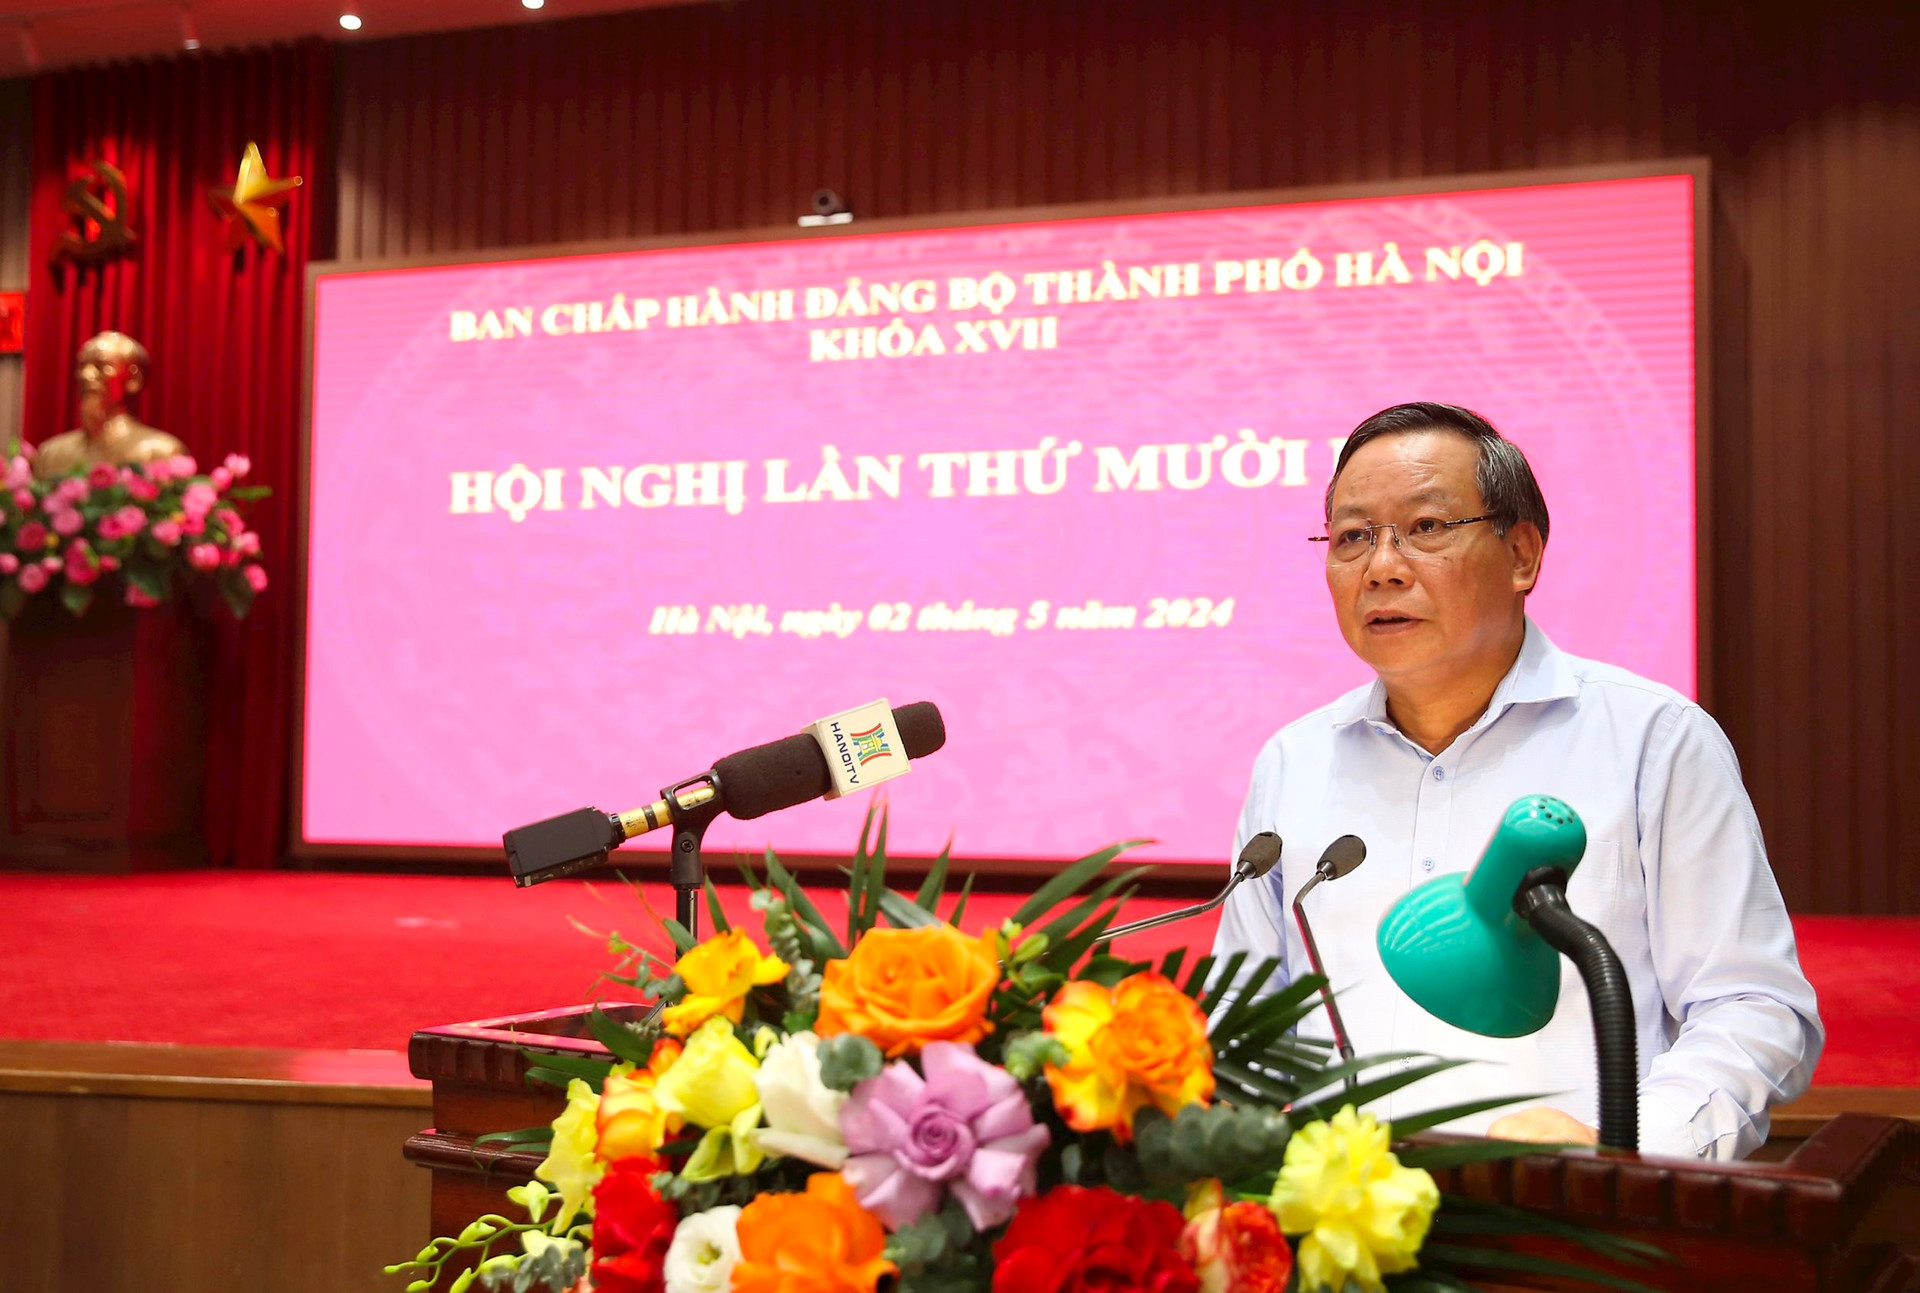 Phó Bí thư Thành ủy Hà Nội Nguyễn Văn Phong trình bày Tờ trình tại hội nghị 